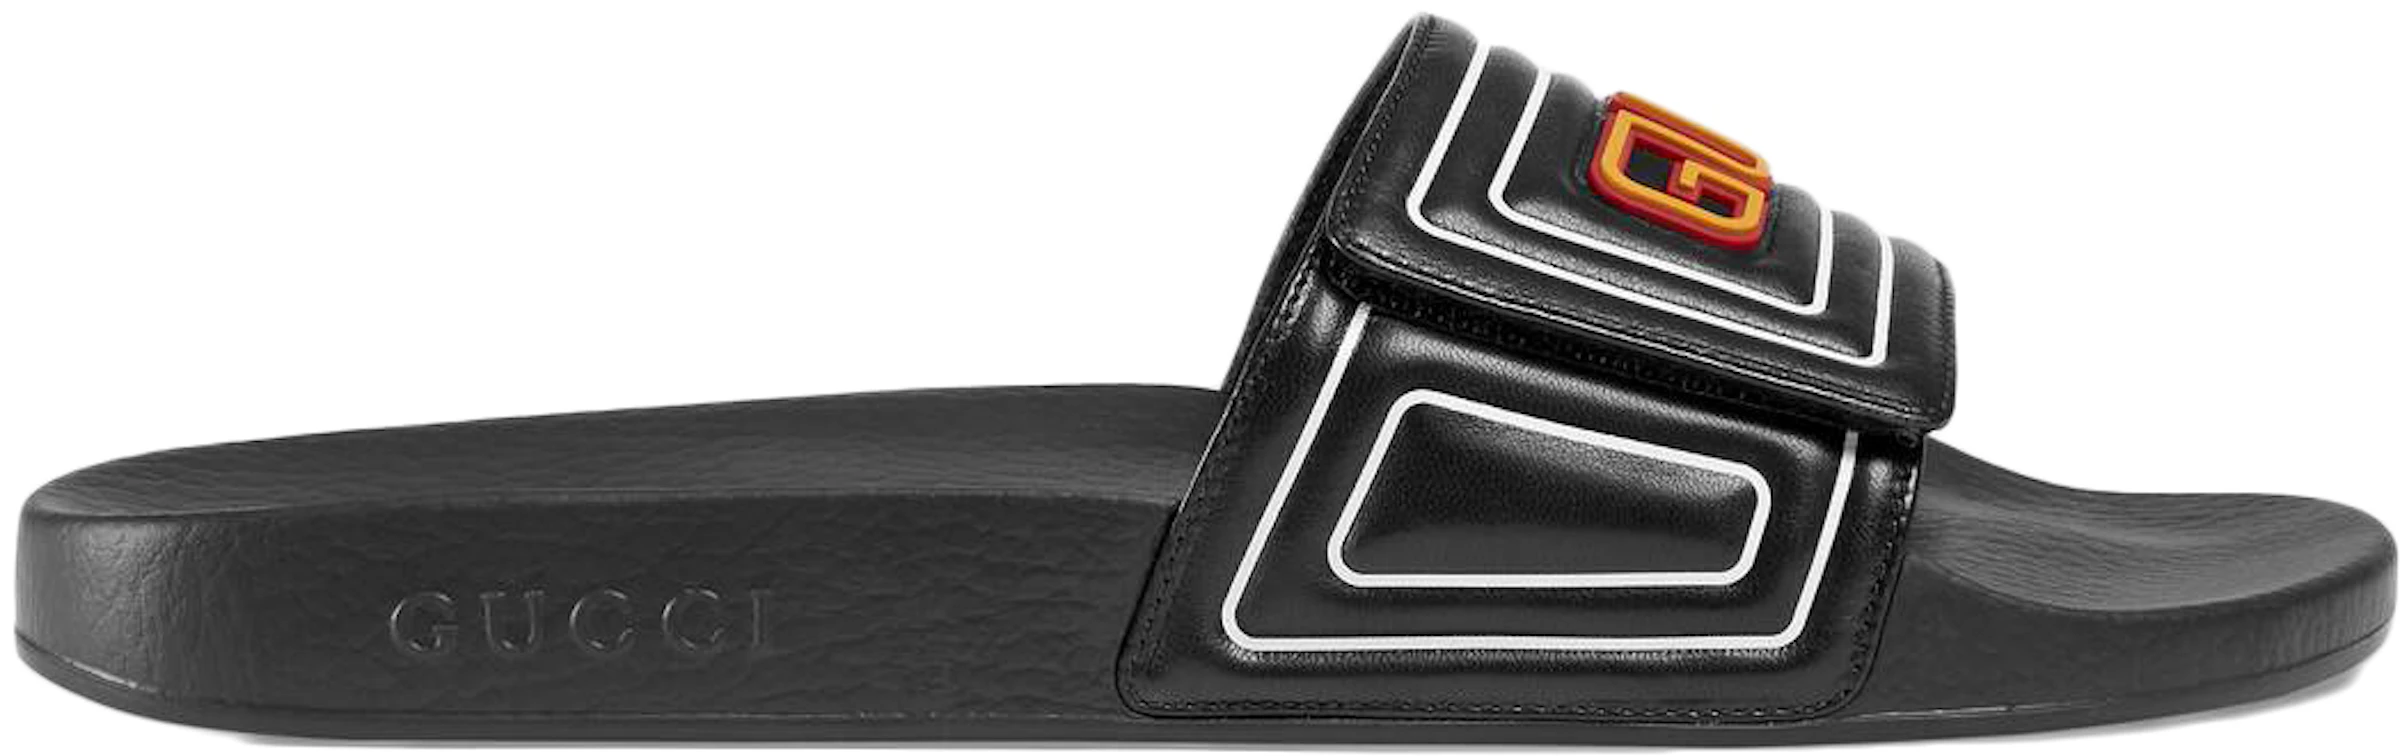 Gucci Slide Logo Leather - 575072 DIR00 1000 - US